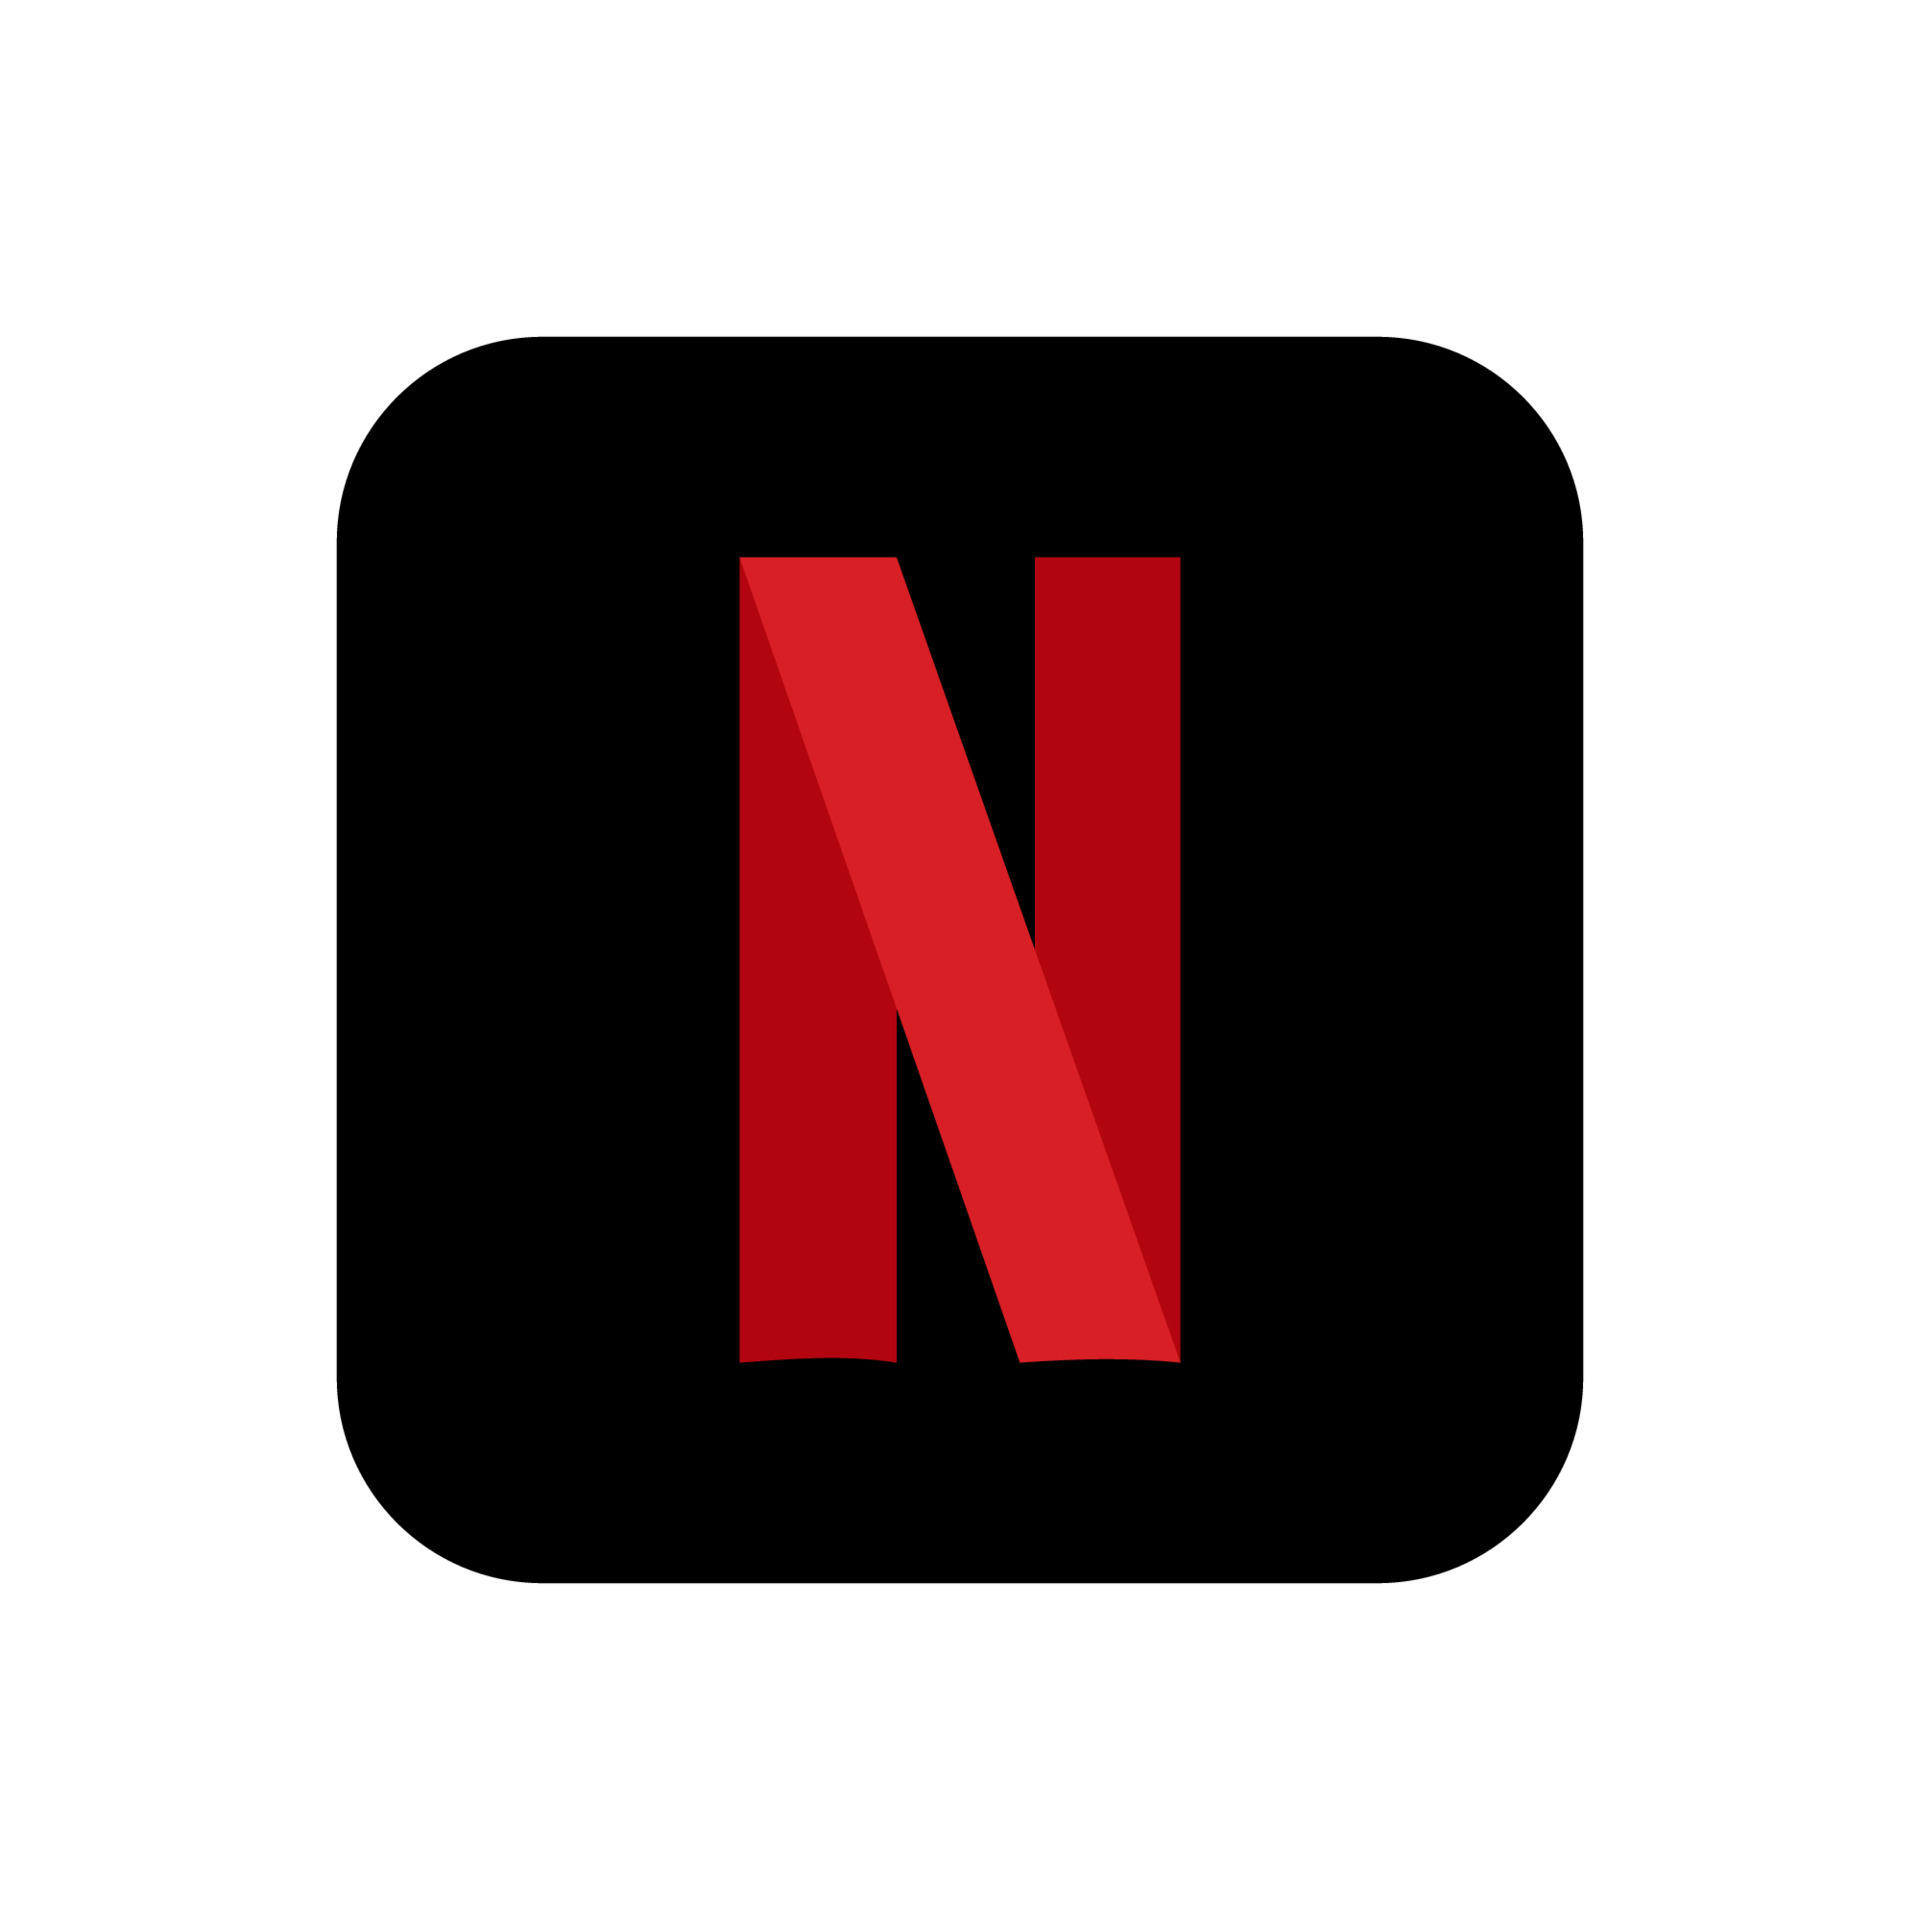 Logo của Netflix là biểu tượng nổi tiếng trên toàn thế giới, tượng trưng cho những bộ phim và chương trình truyền hình đình đám. Hãy cùng khám phá hình ảnh liên quan đến logo đặc trưng này!